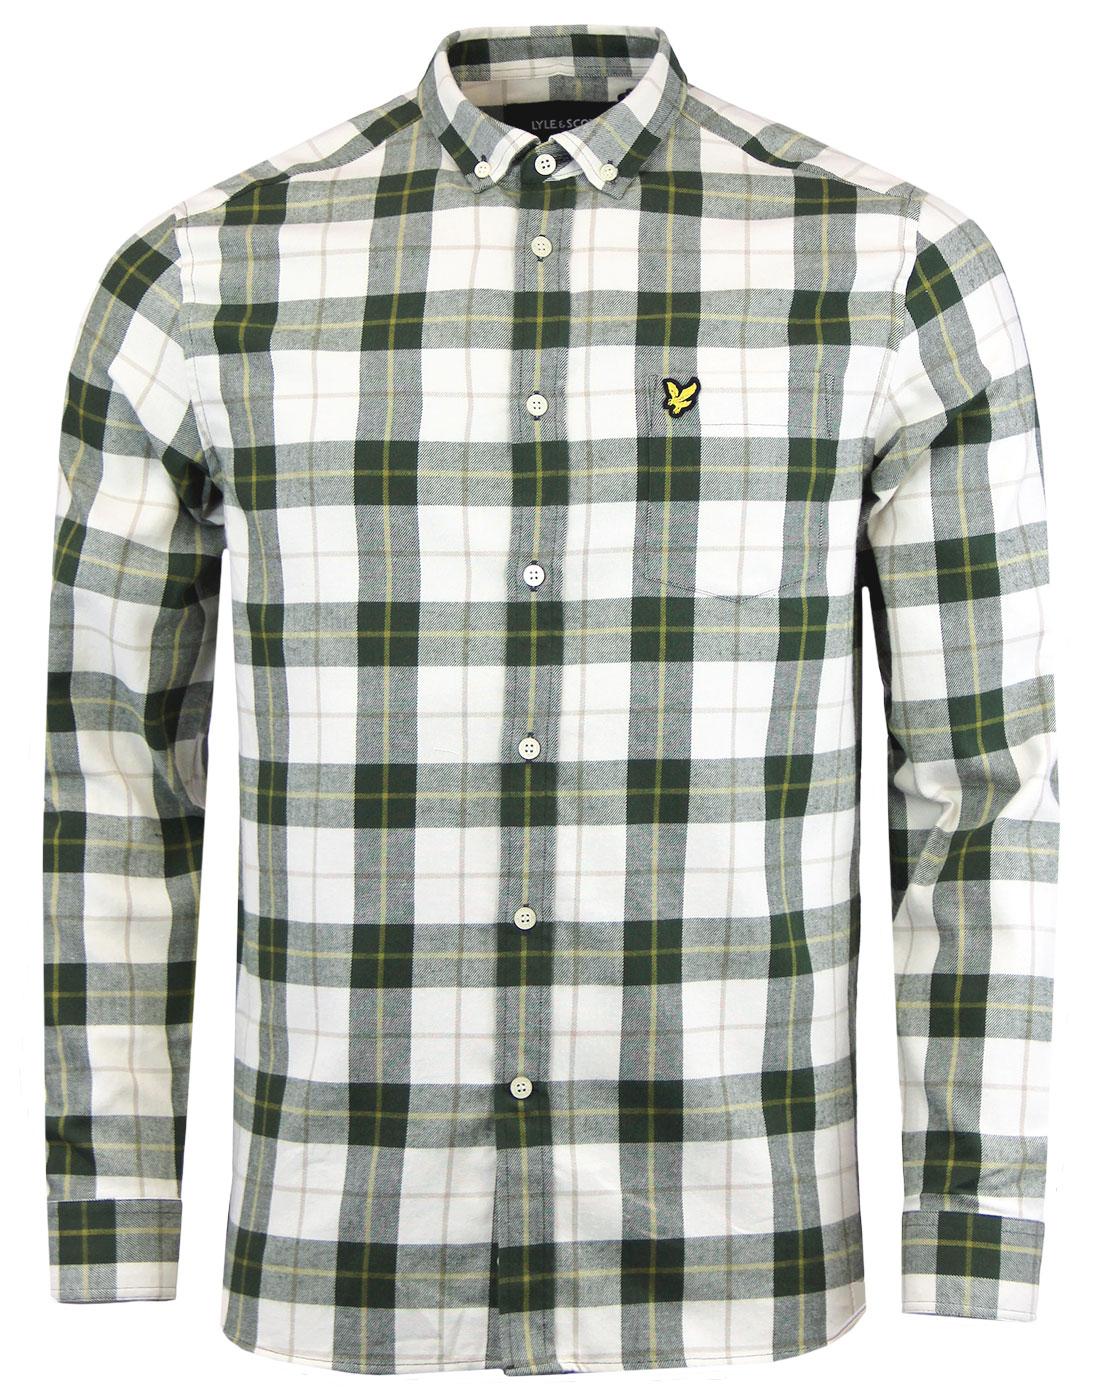 LYLE & SCOTT Men's Retro Mod Check Flannel Shirt